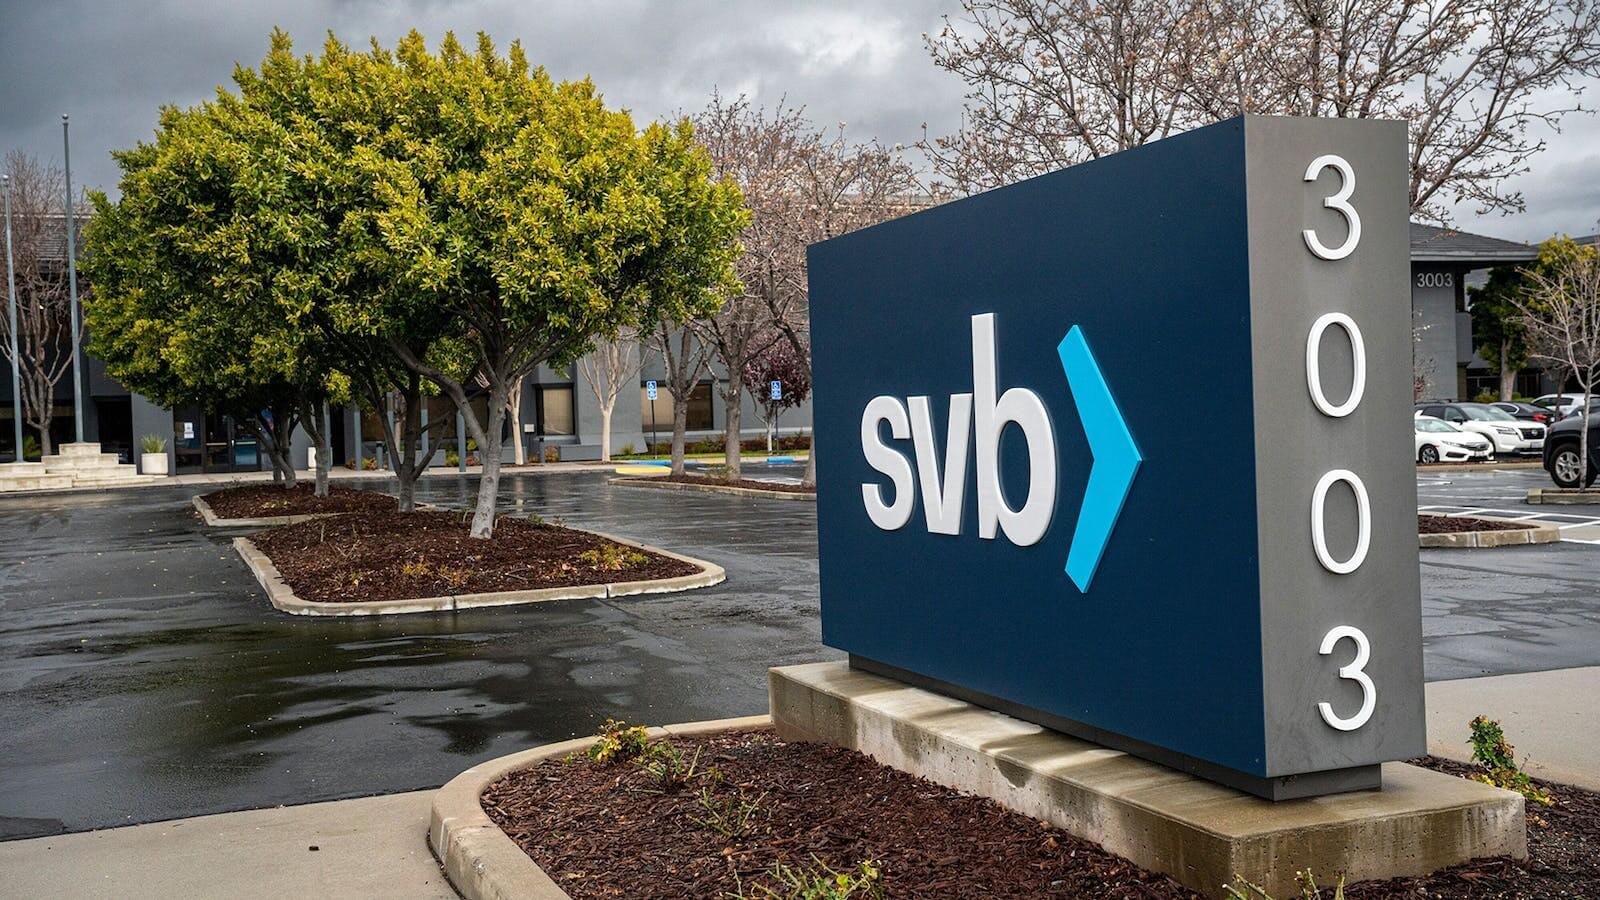 Один из крупнейших банков США под названием Silicon Valley Bank закрылся. Как это повлияет на криптовалюты и экономику в целом? Логотип банка Silicon Valley Bank. Фото.